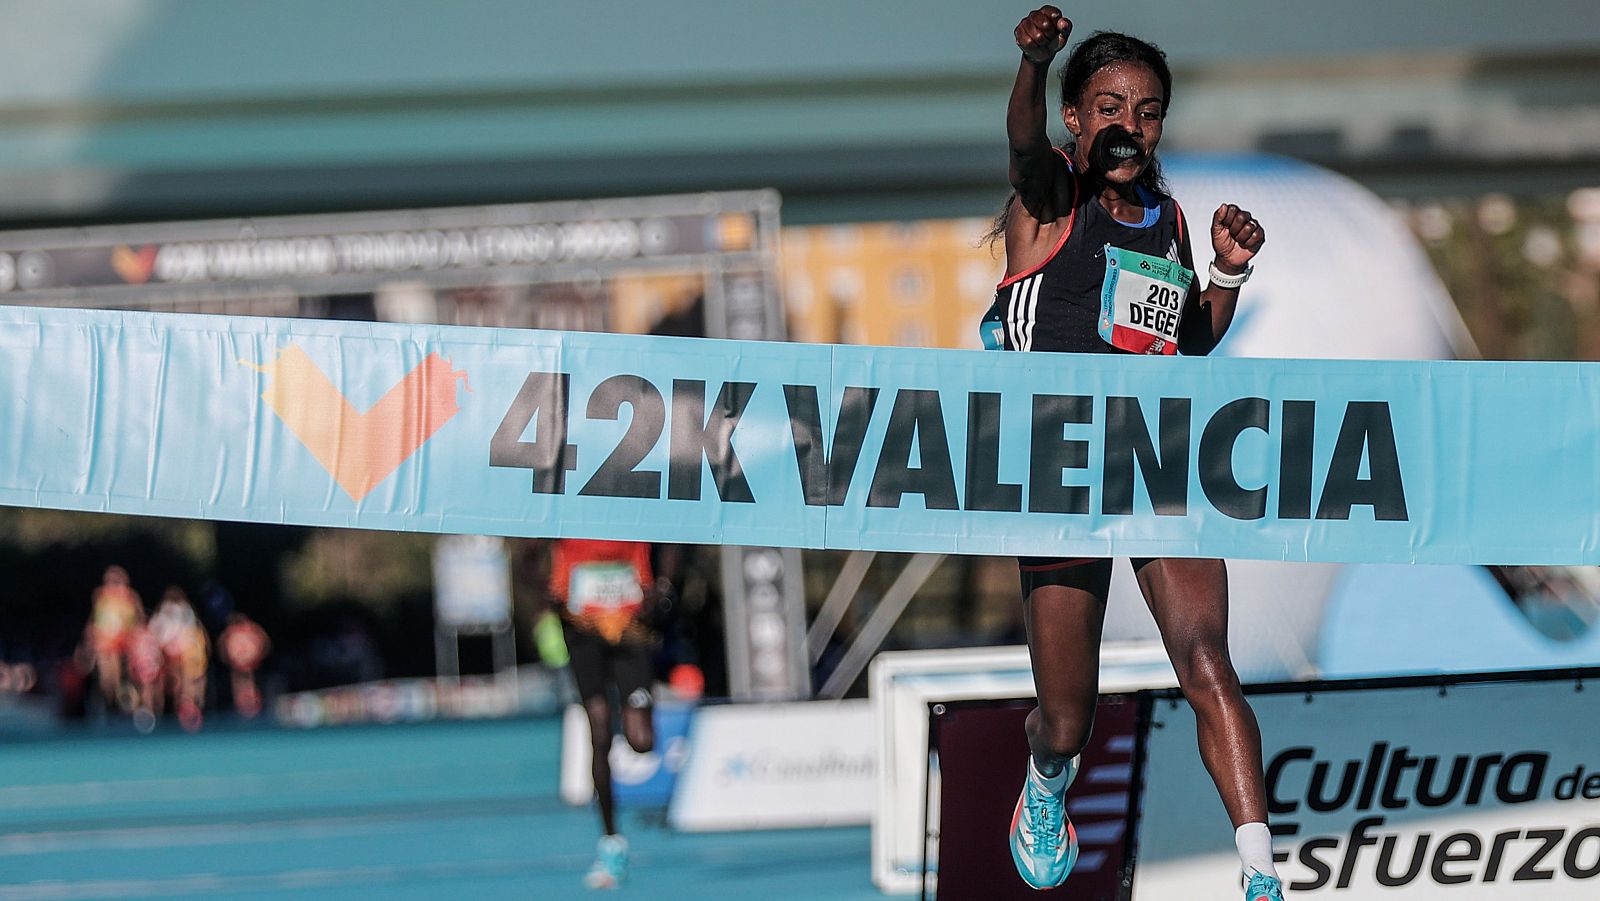 La atleta etíope Worknesh Degefa conquistó la edición 43 del Maratón Valencia Trinidad Alfonso.